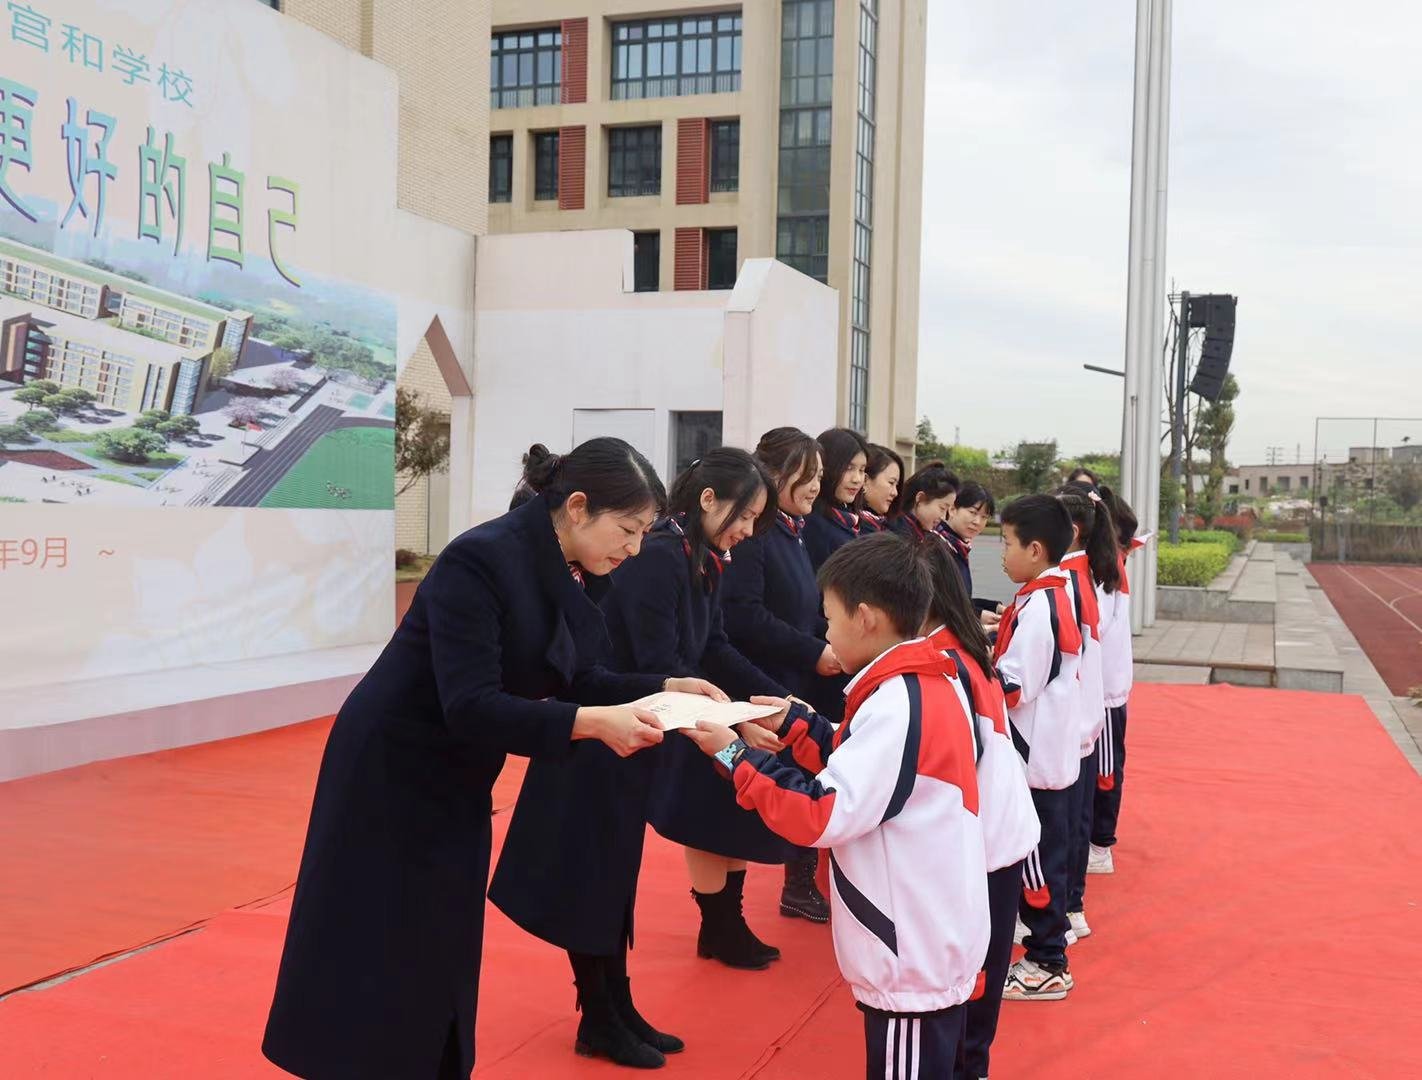 遇见更好的自己——重庆高新实验一小宫和学校2021春季开学典礼